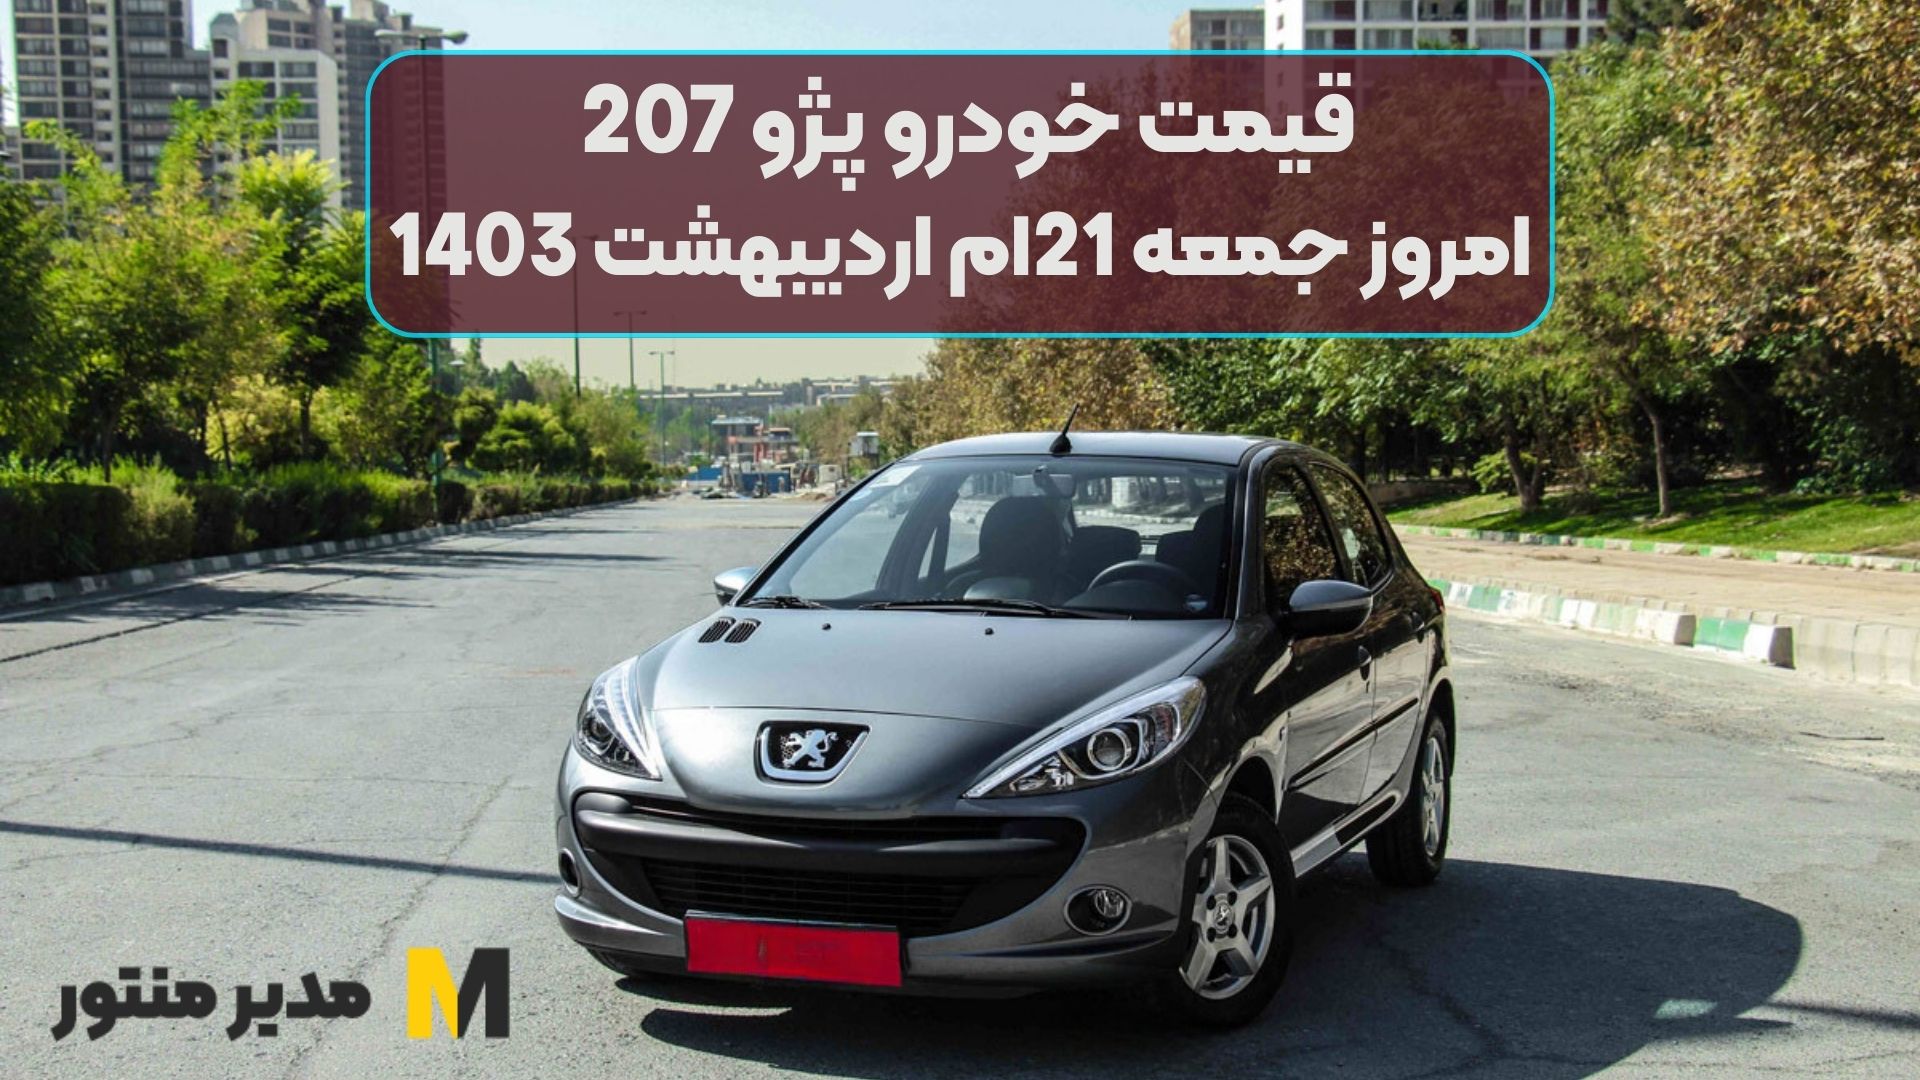 قیمت خودرو پژو 207 امروز جمعه 21ام اردیبهشت 1403